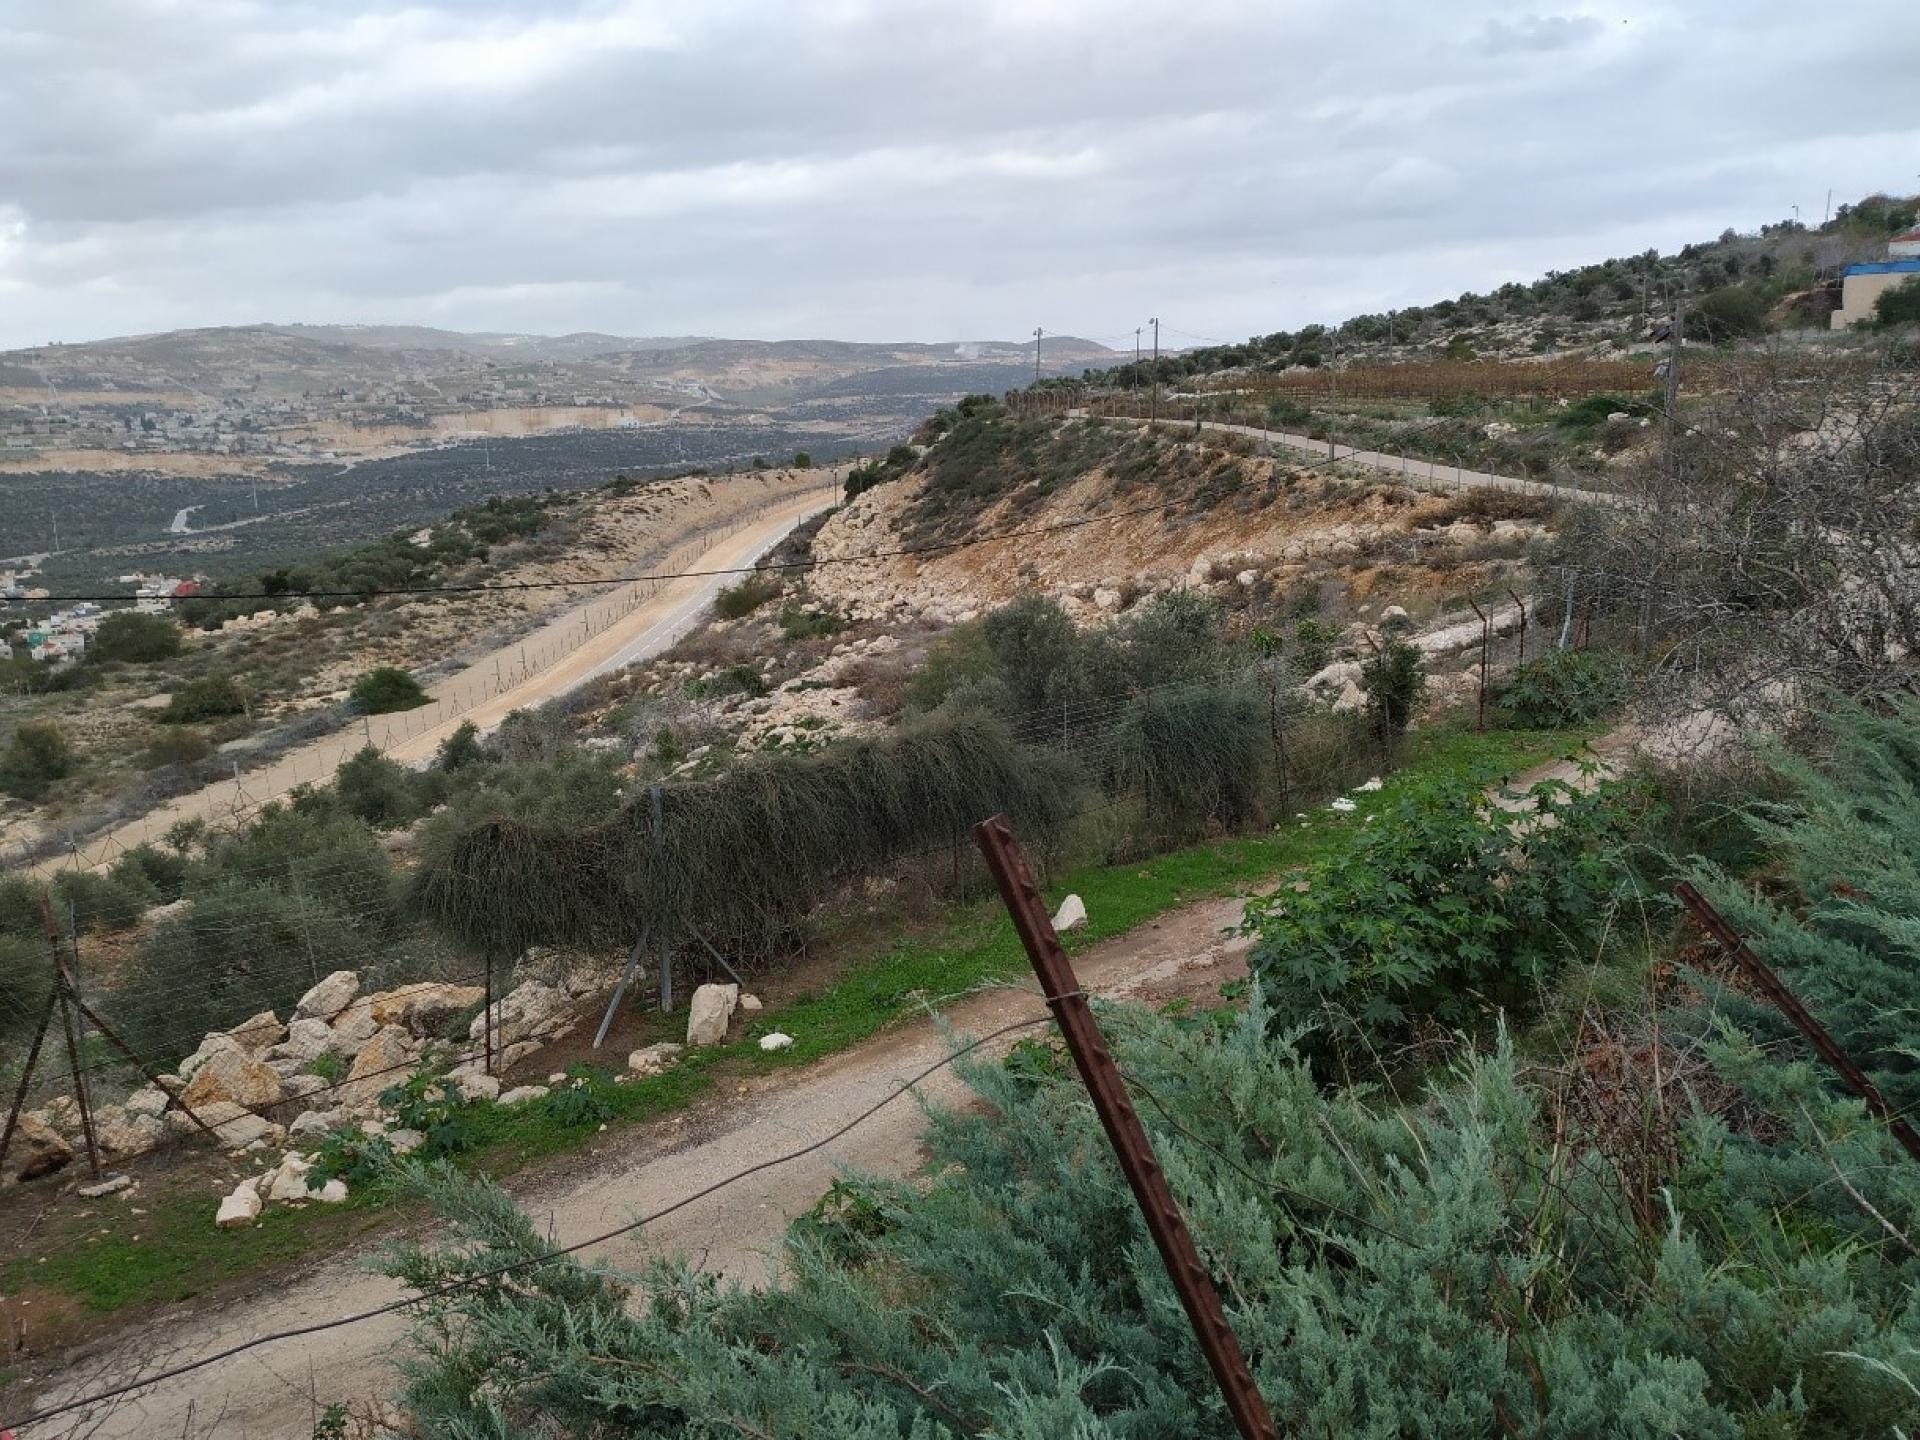 כביש הביטחון של התנחלות אריאל וגדר ההפרדה שקברה את מקאם שיח' אחמד אל קס'ב